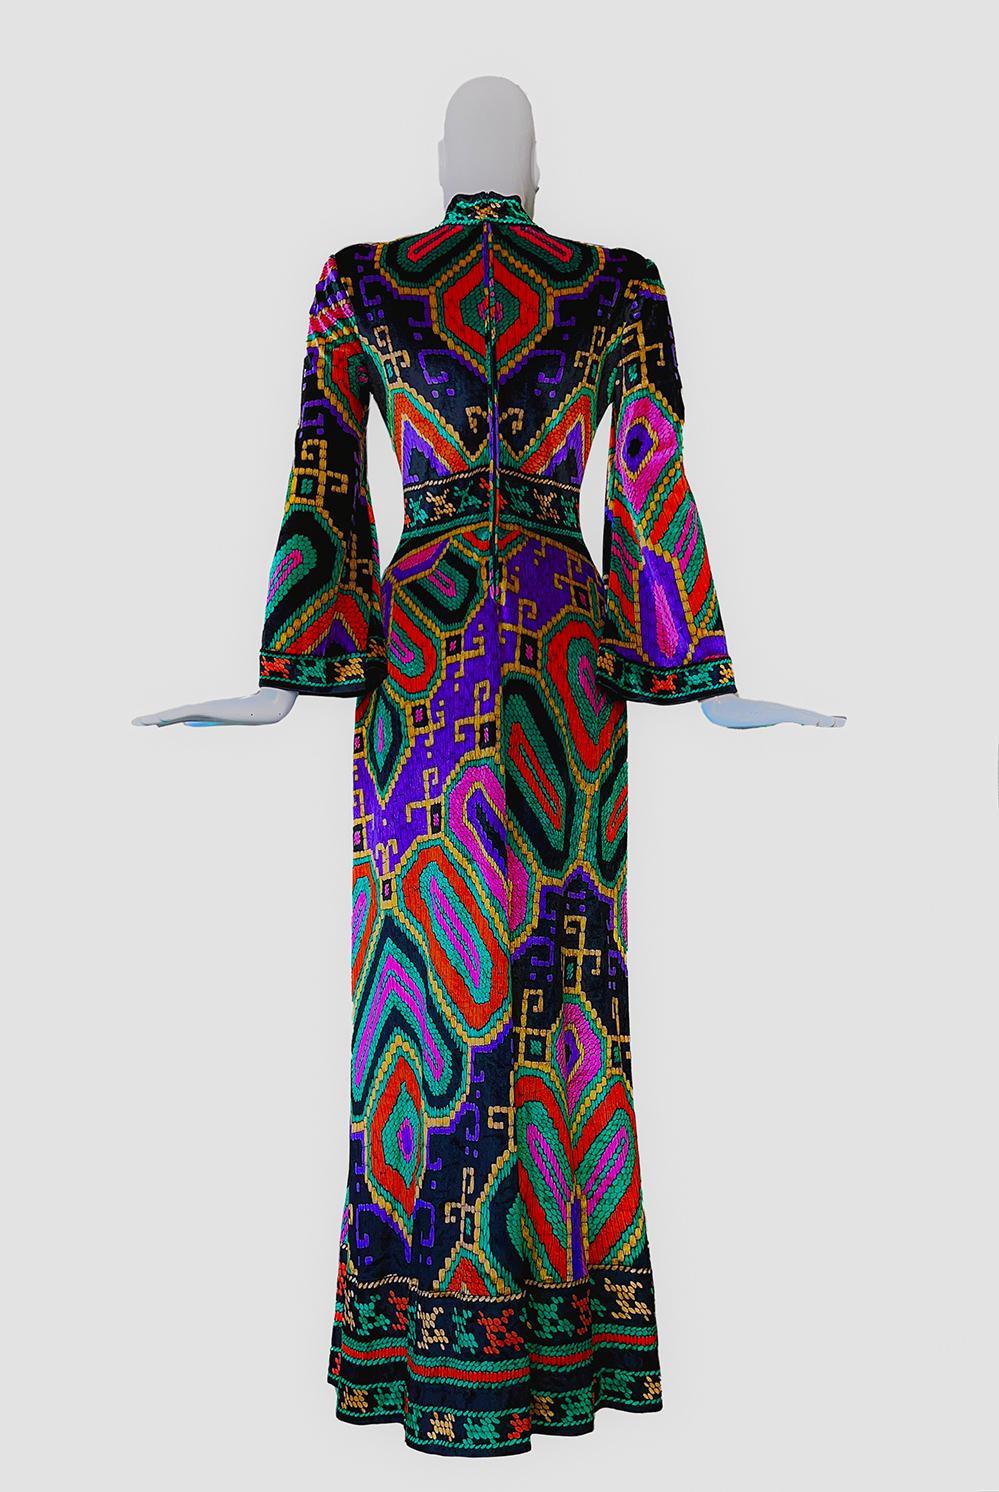 Women's Leonard Paris 1970 Luxury Couture Maxi Dress 70s Silk Velvet Gown For Sale